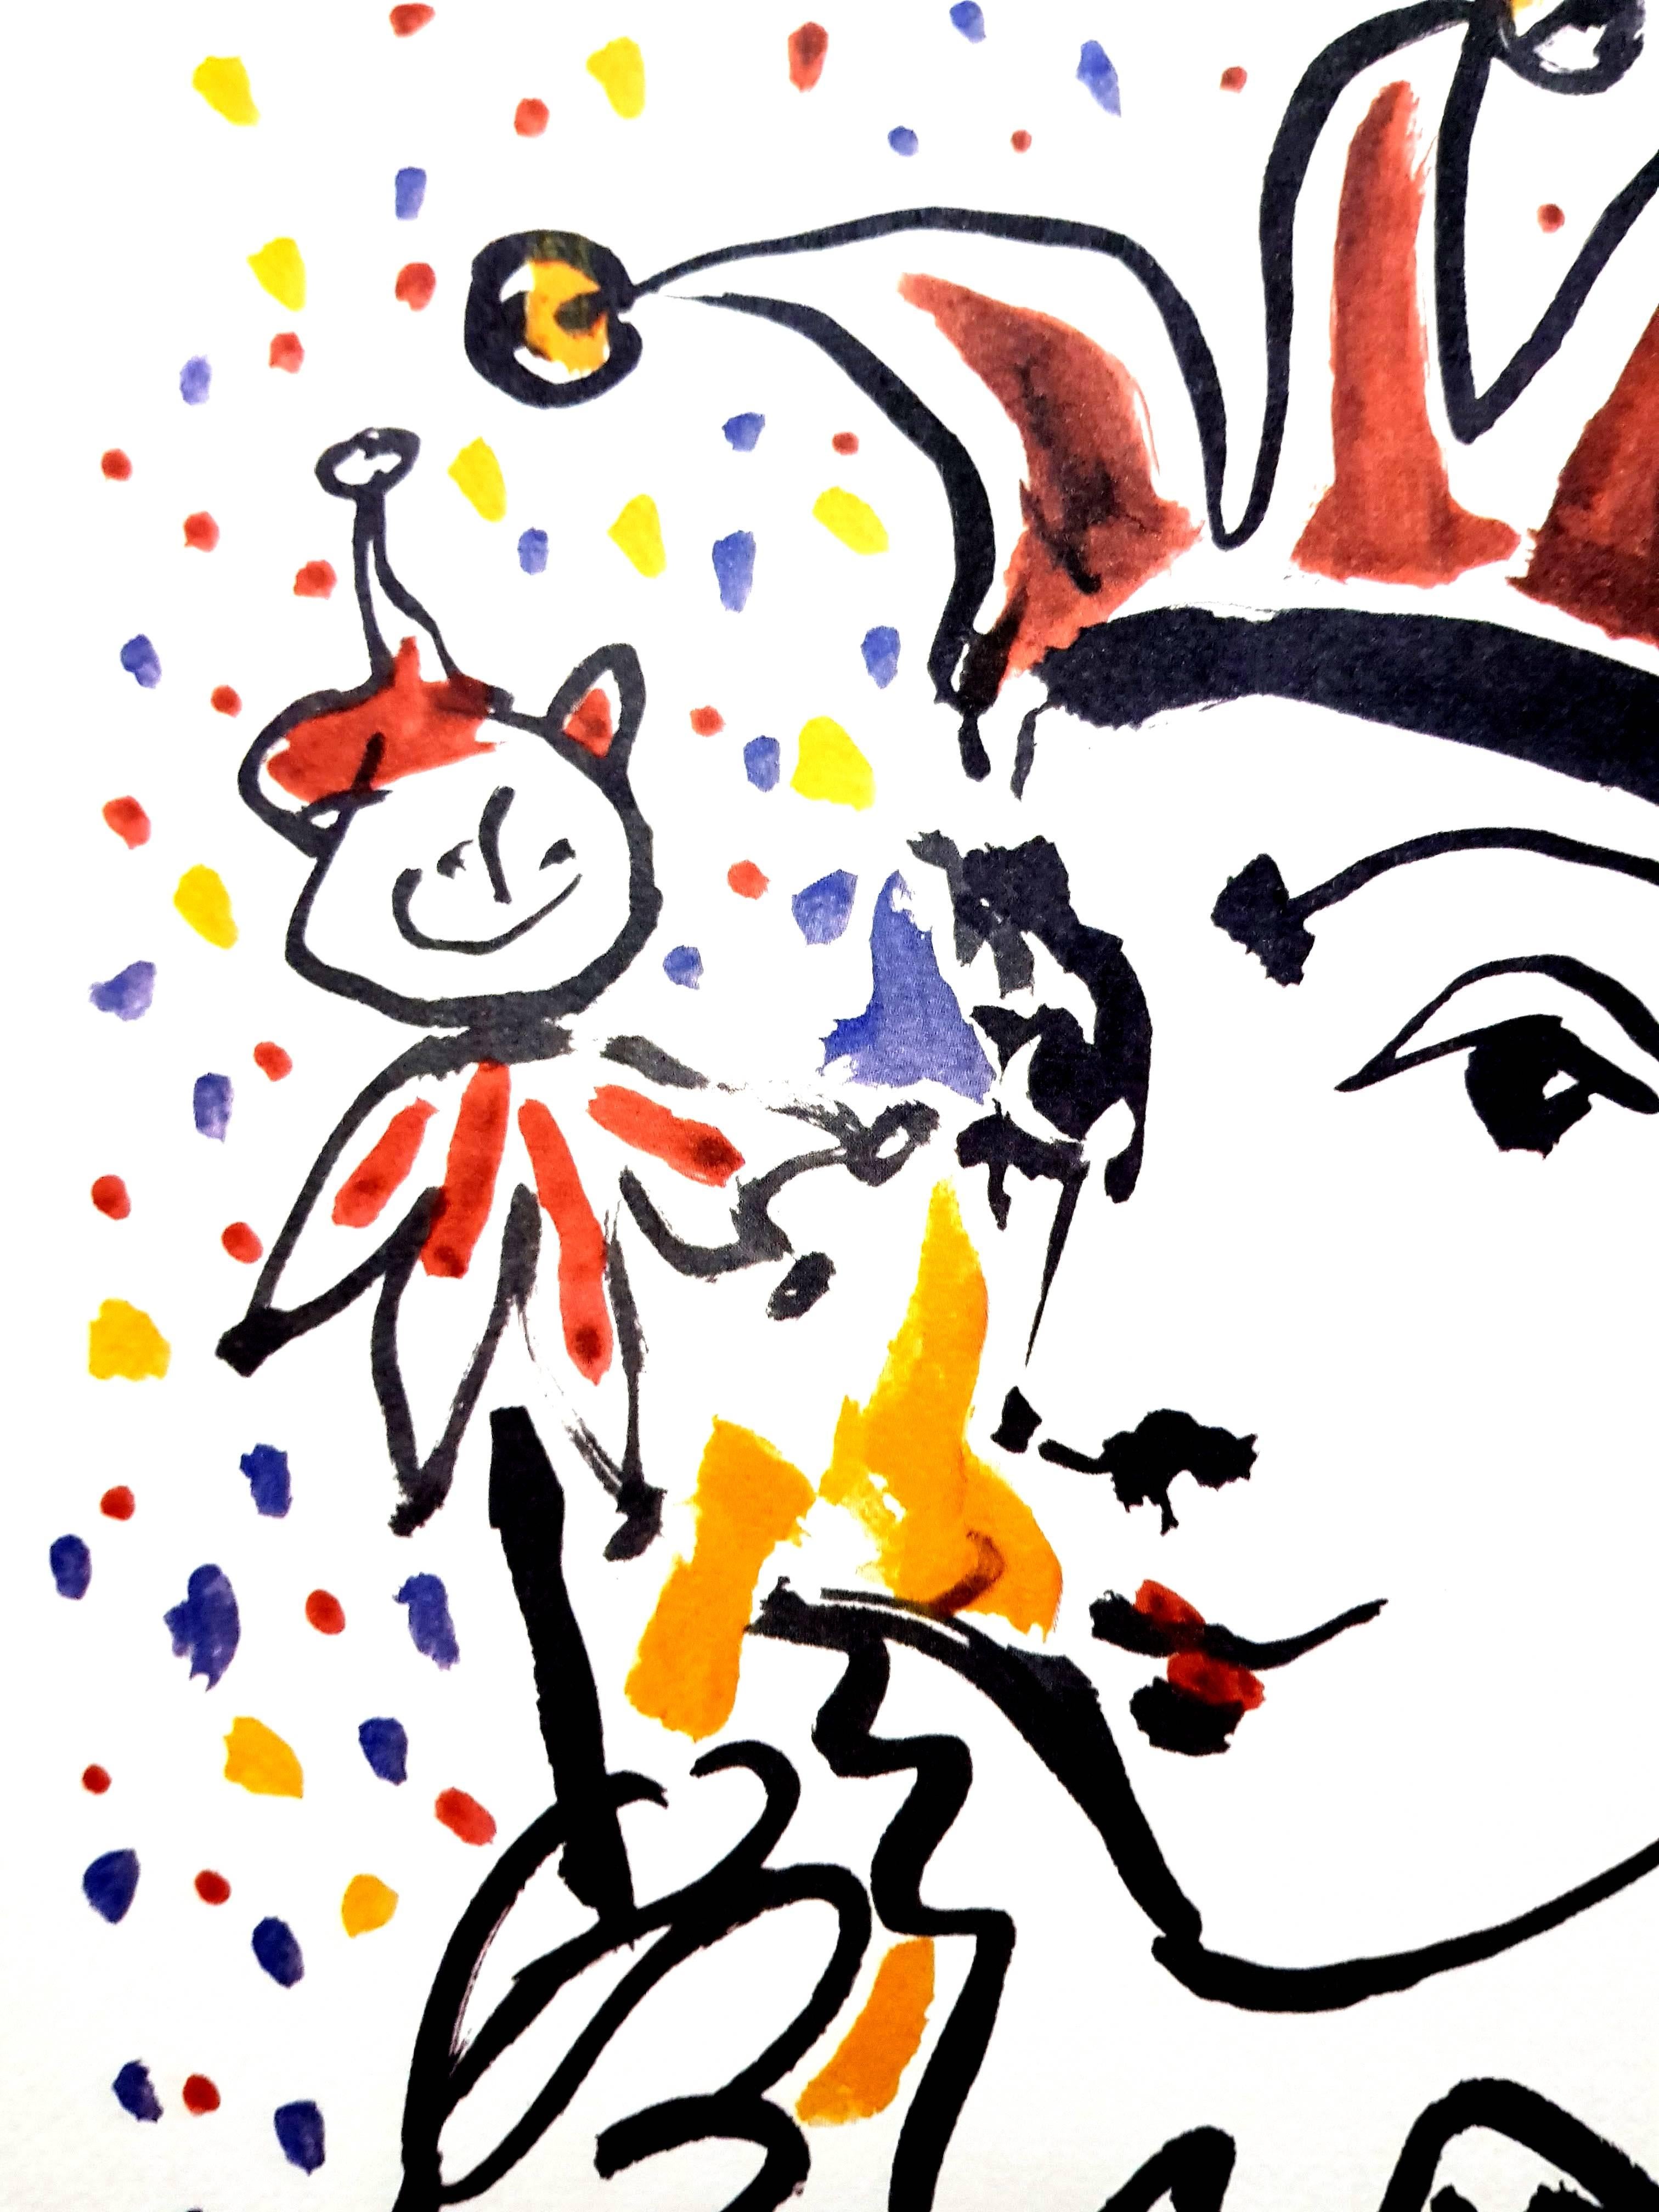 D'après PABLO PICASSO (1881-1973)
Carnaval
Dimensions : 50 x 40 cm
Signé et daté dans la plaque
Lithographie couleur sur Velin d'Arches réalisée à partir d'un dessin
Edition Succession Picasso, Paris (édition de reproduction posthume)
Editions de la